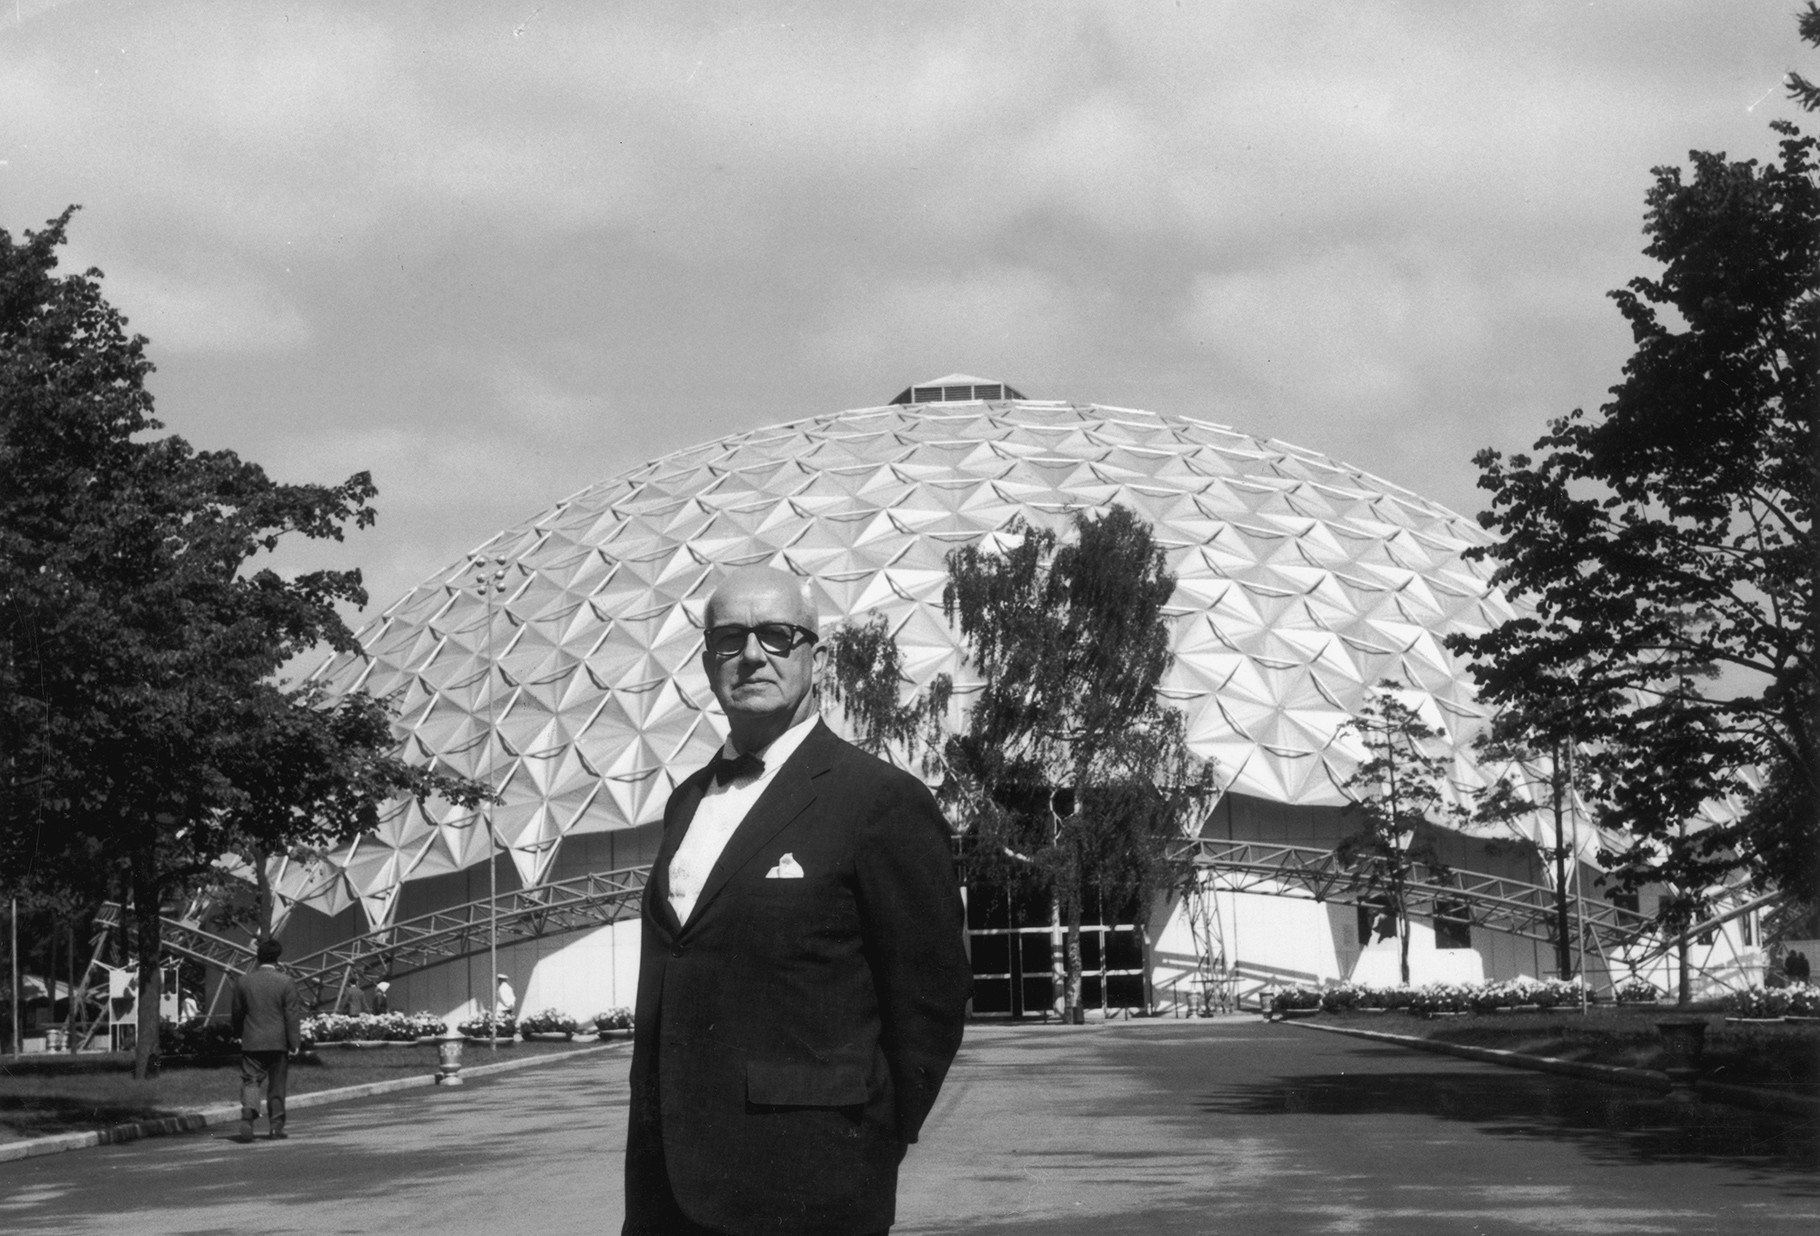 Амерички архитекта и проналазач Ричард Бакминстер Фулер позира испред „златне куполе“ у чијем пројектовању је учествовао и која се веома допала Московљанима.